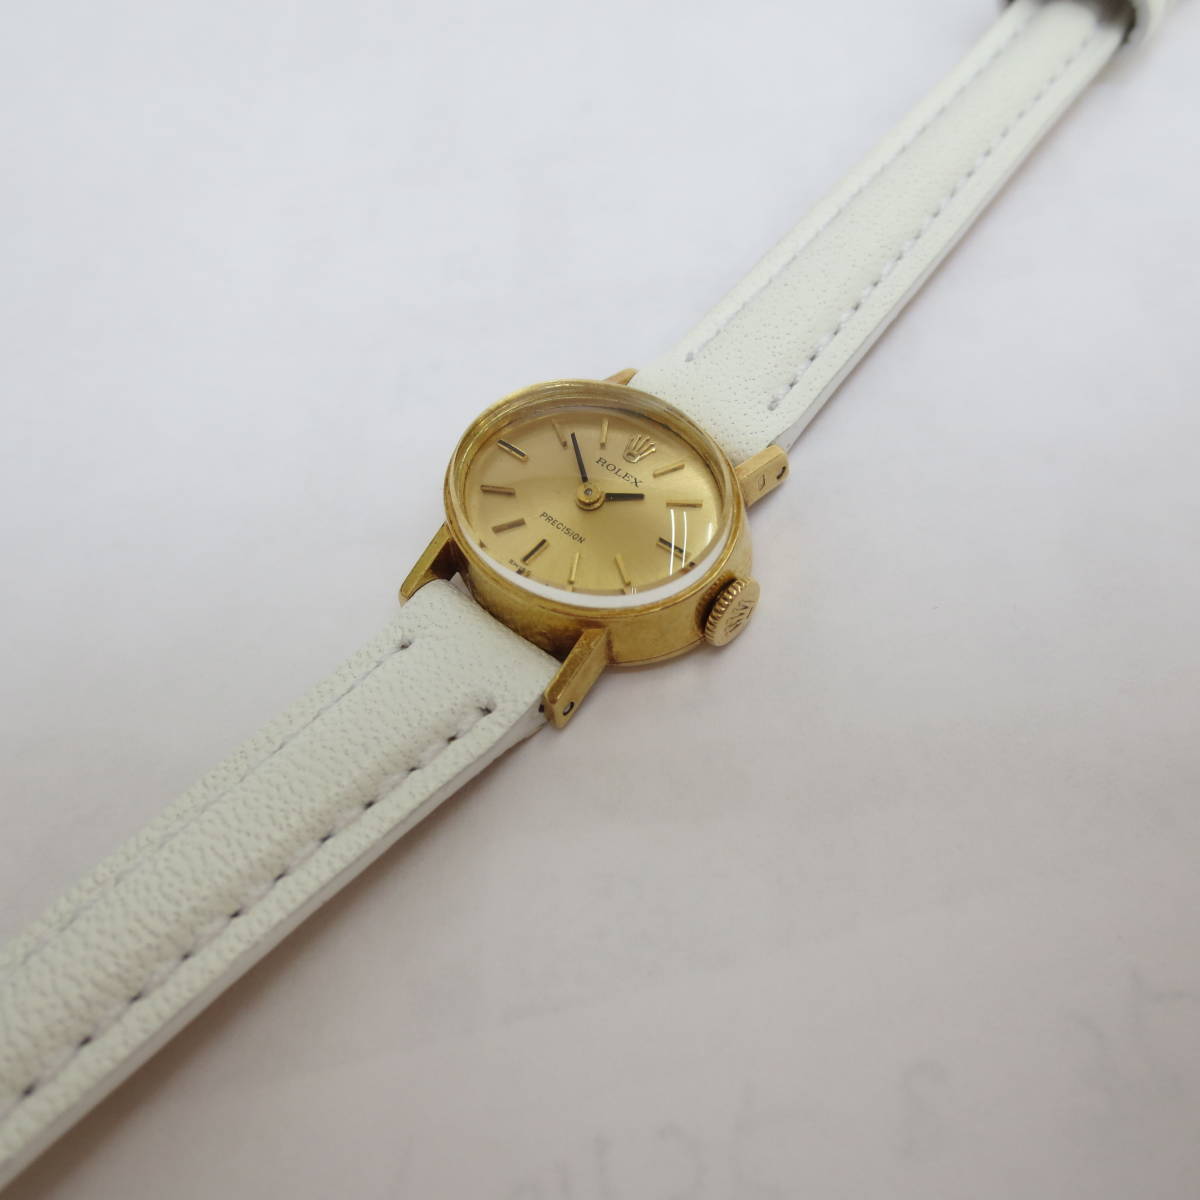 ROLEX ORCHID CELLINI K18YG ANTIQUE Watch ロレックス オーキッドチェリーニ 18金無垢 手巻 1970年代  オリジナル 動作良好 本物 貴重品